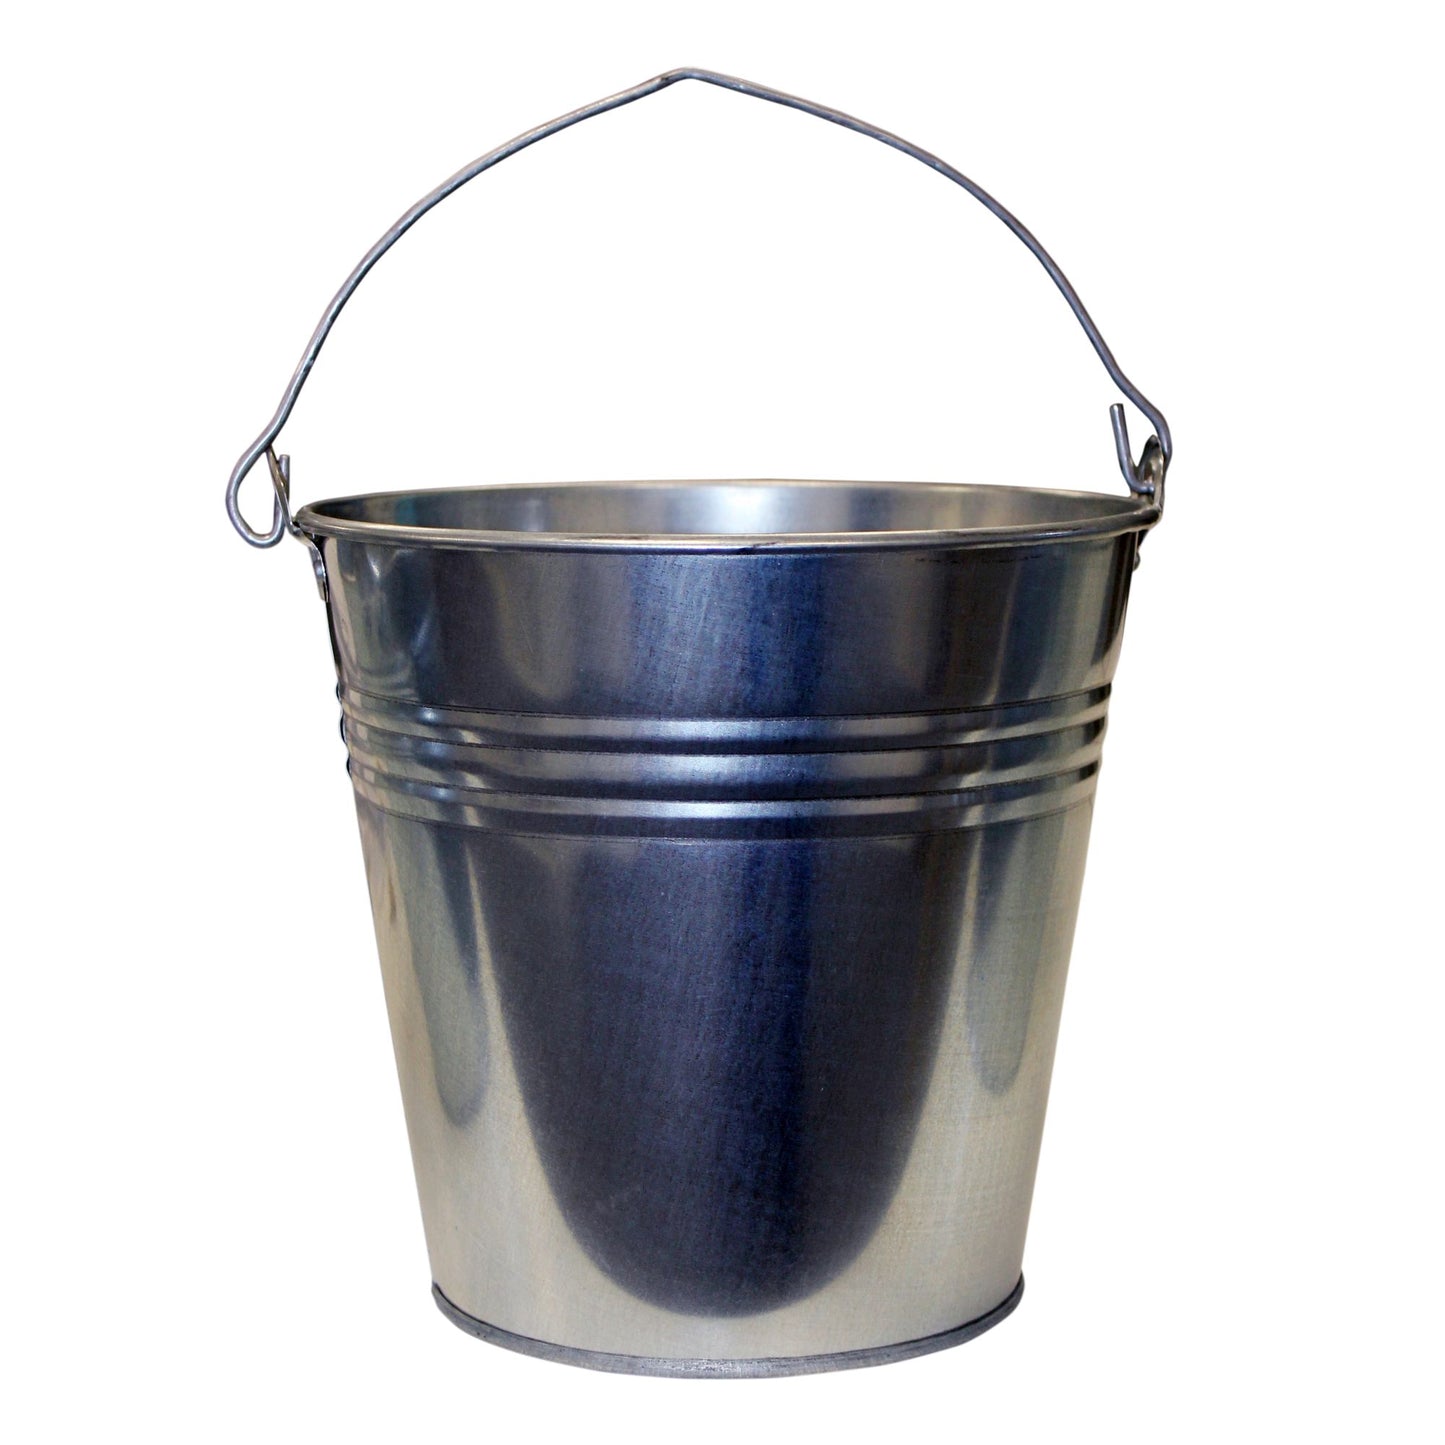 Galvanised Metal Bucket with Metal Handle